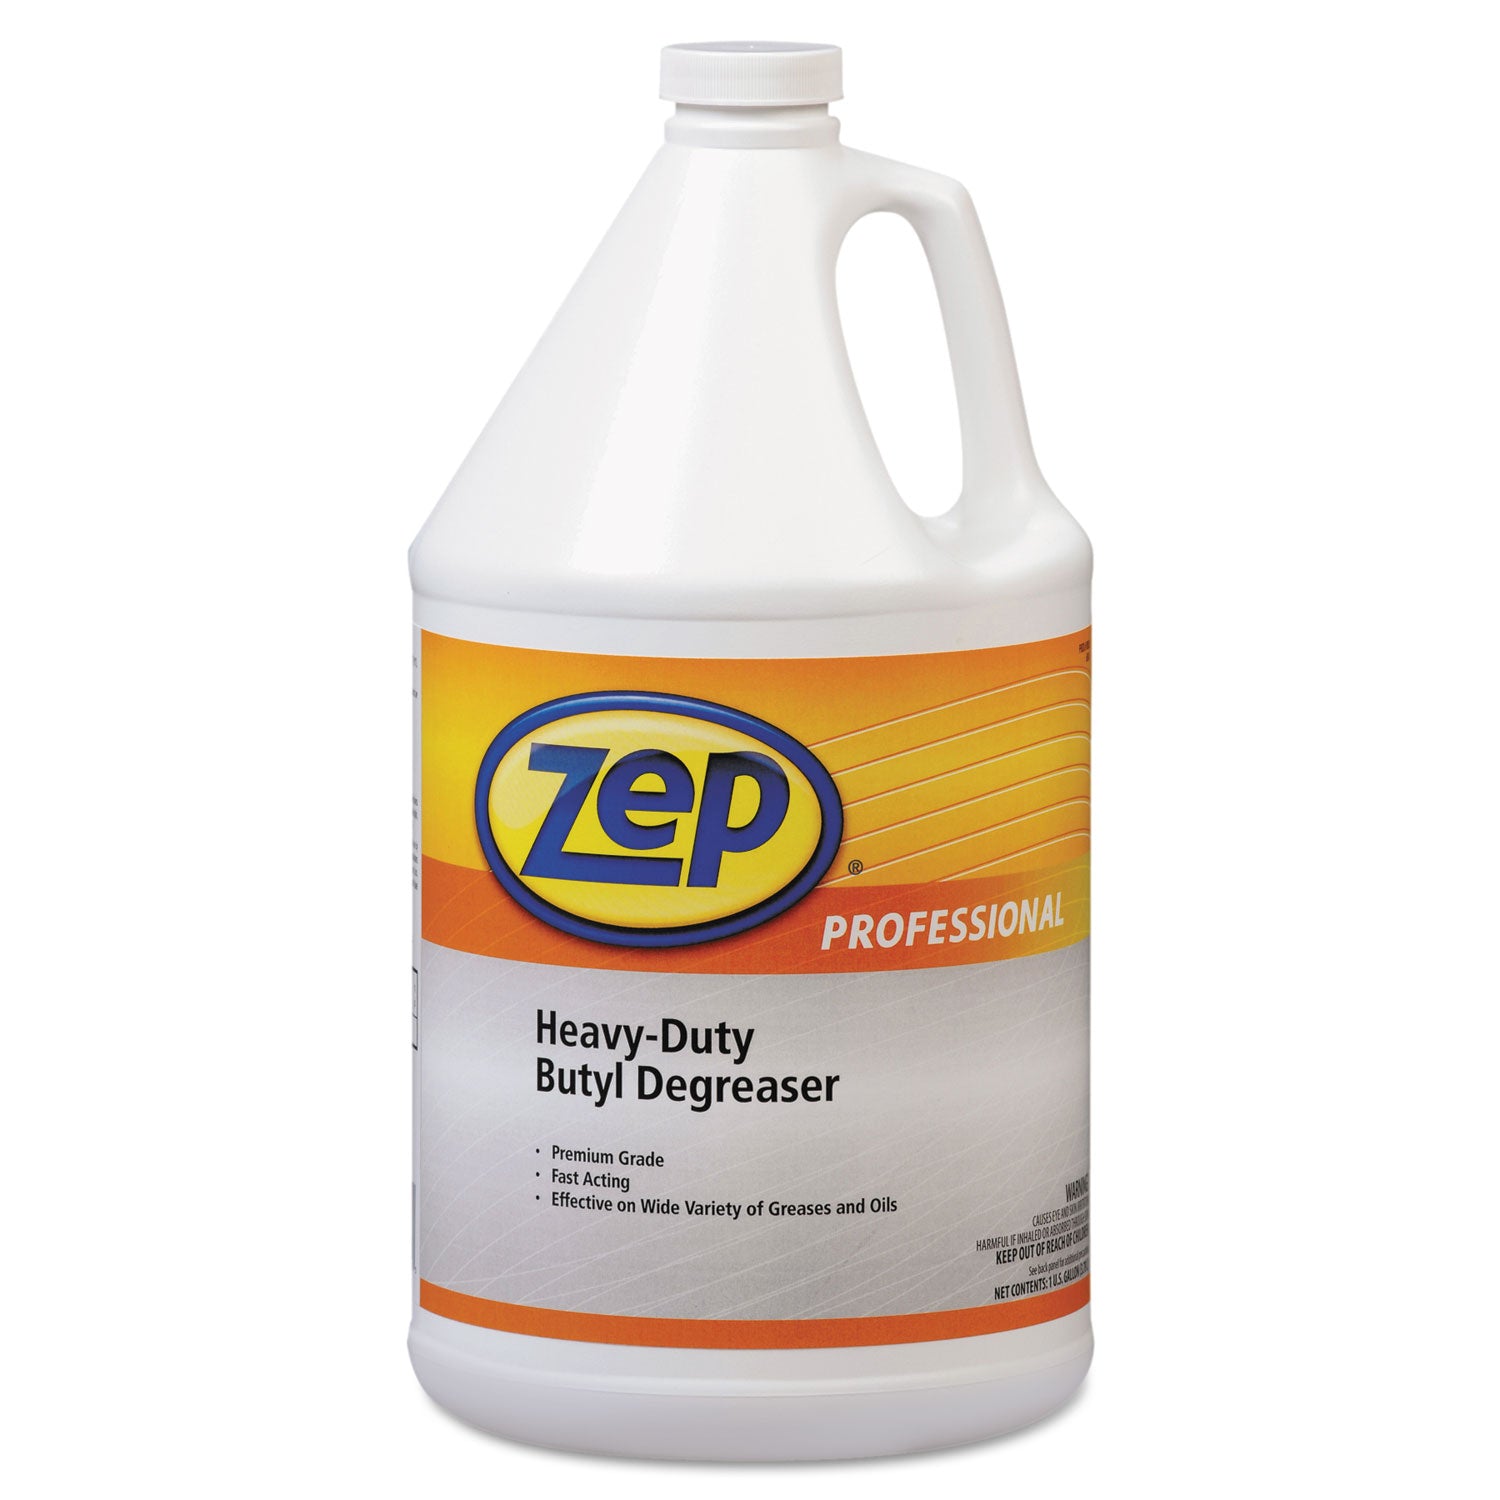 heavy-duty-butyl-degreaser-1-gal-bottle_zpp1041483 - 1